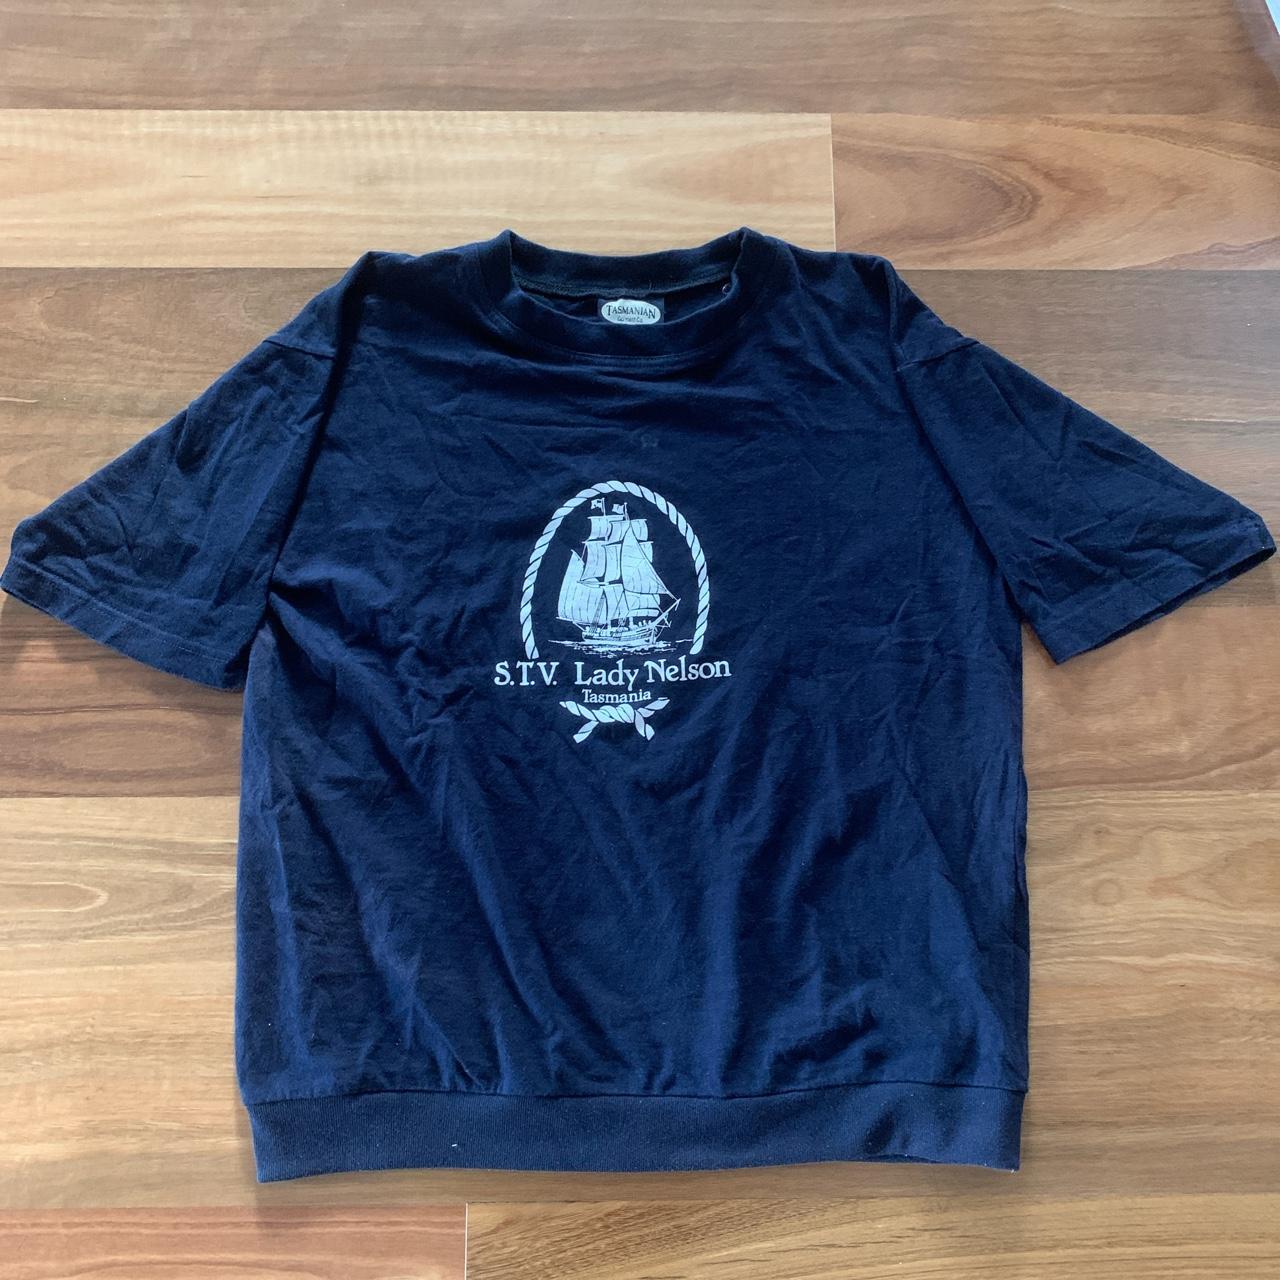 Tasmanian Gorment Co. vintage oversized T-shirt -... - Depop